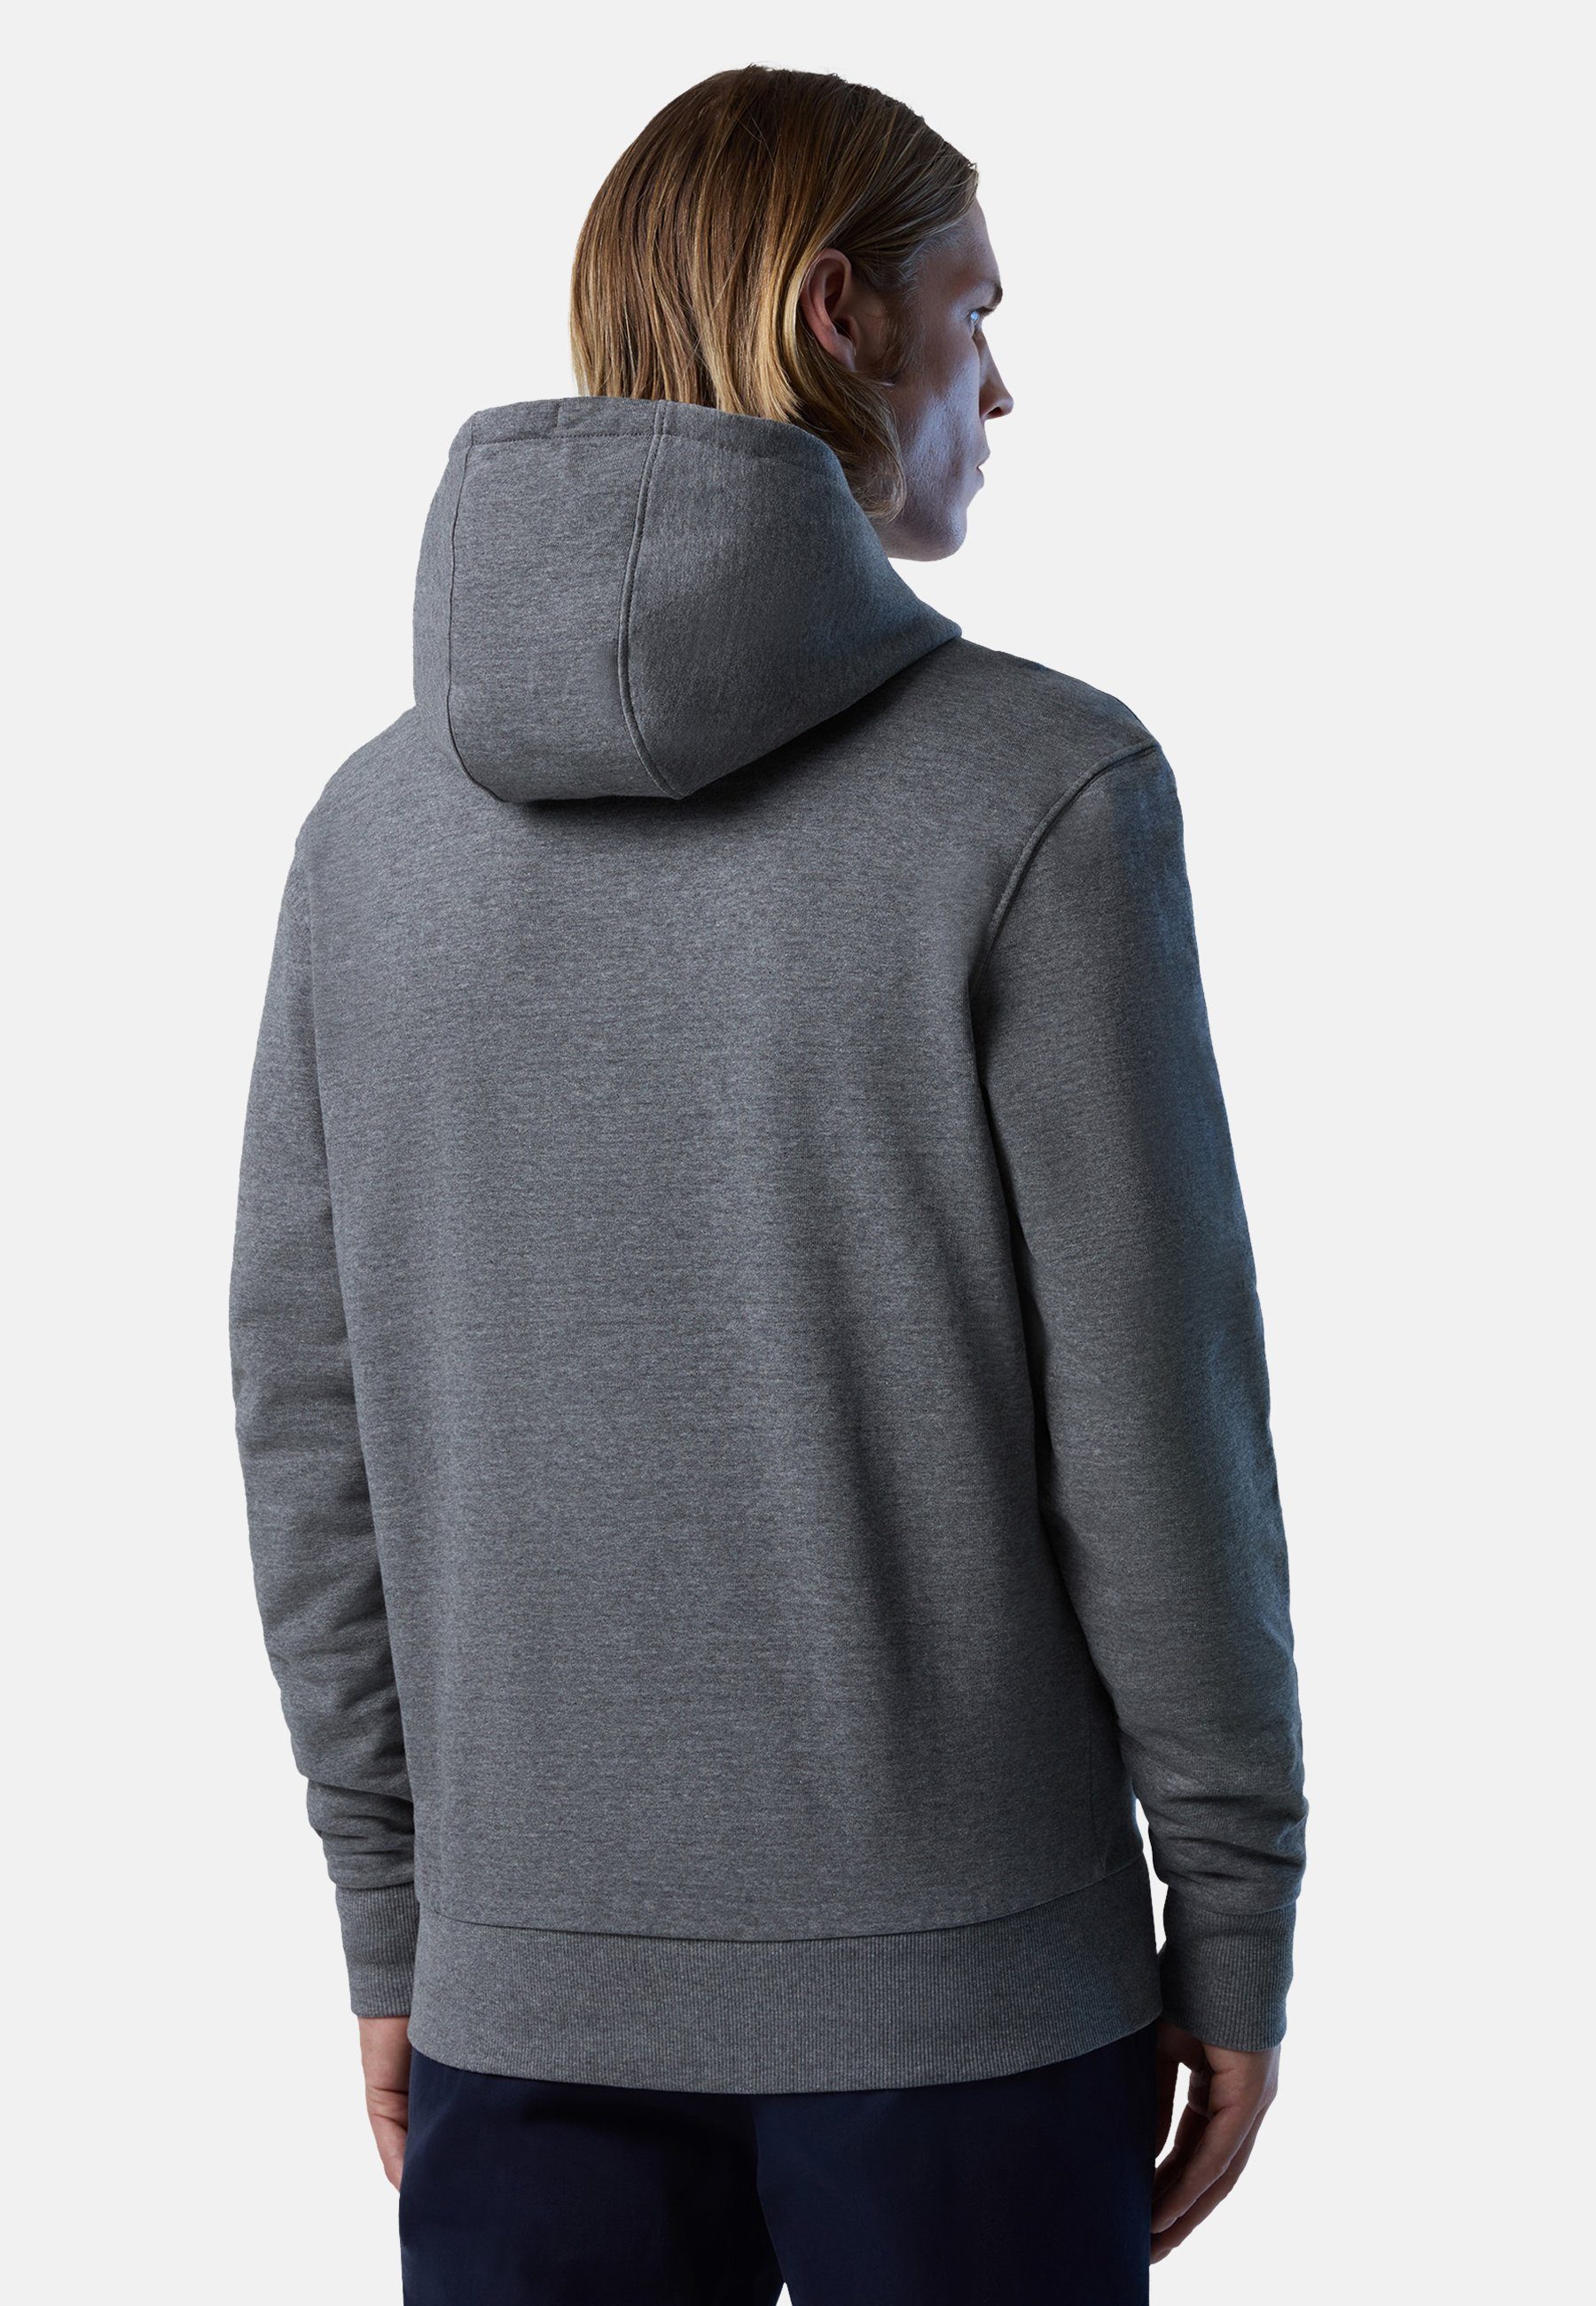 North Sails Kapuzensweatshirt mit klassischem mit Reißverschluss Design durchgehendem Hoodie grey